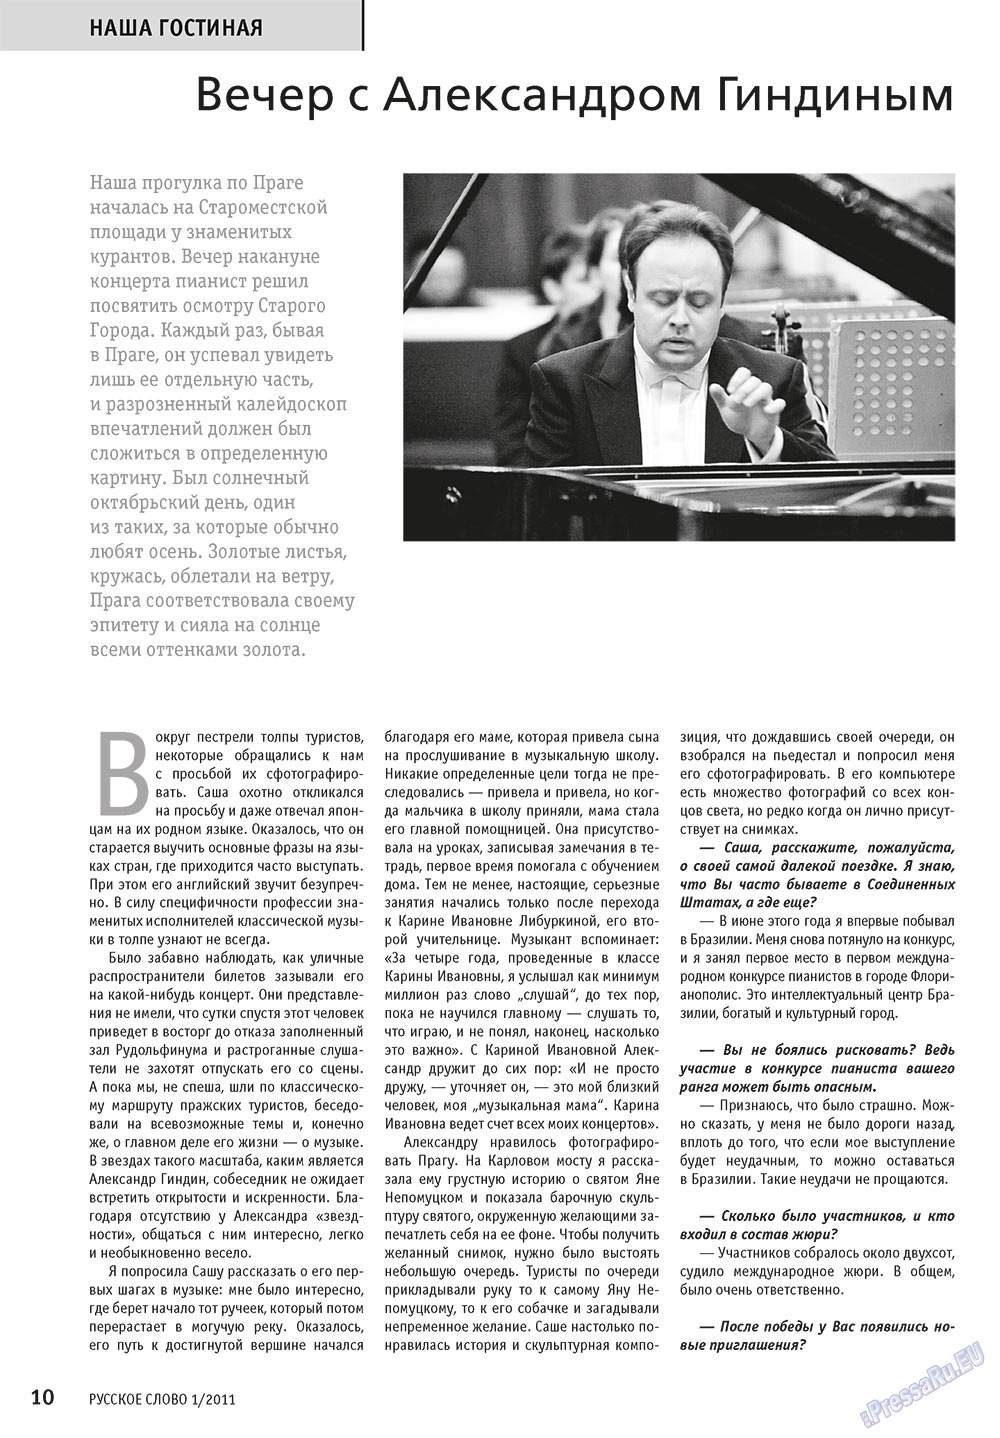 Русское слово, журнал. 2011 №1 стр.12